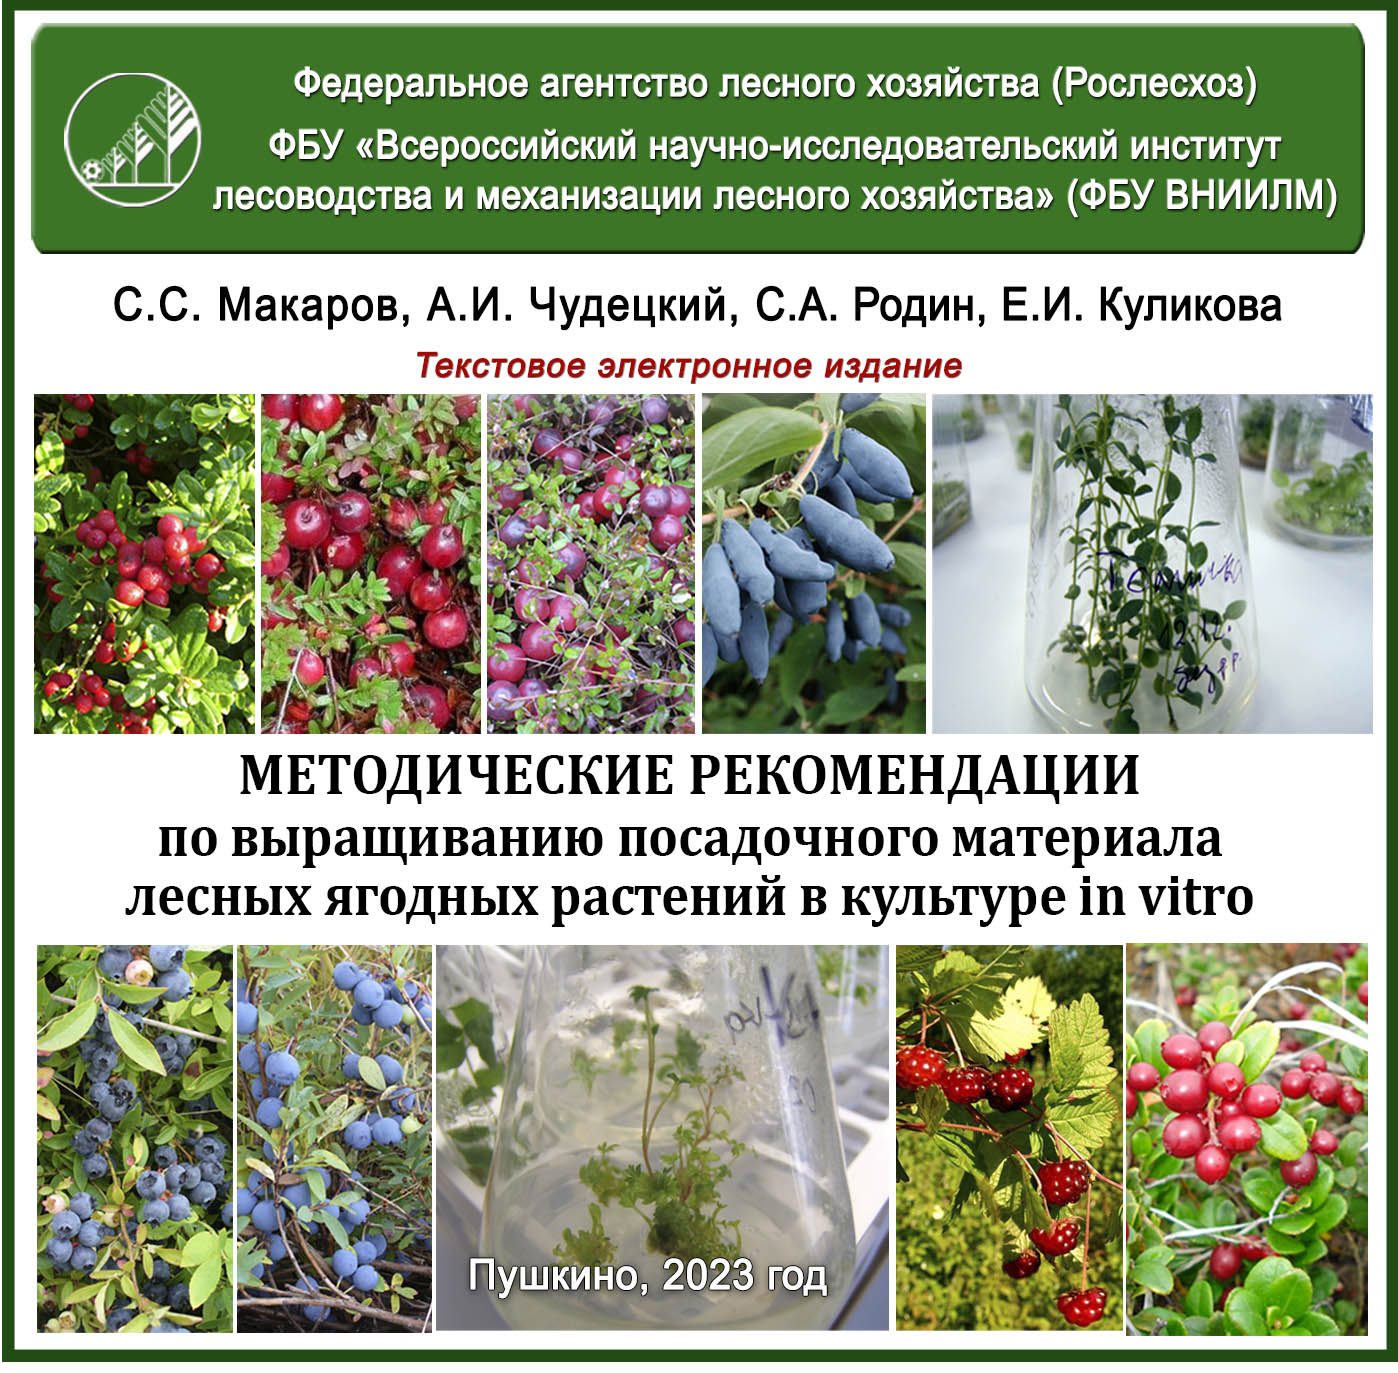 Методические рекомендации по выращиванию посадочного материала лесных ягодных растений в культуре in vitro